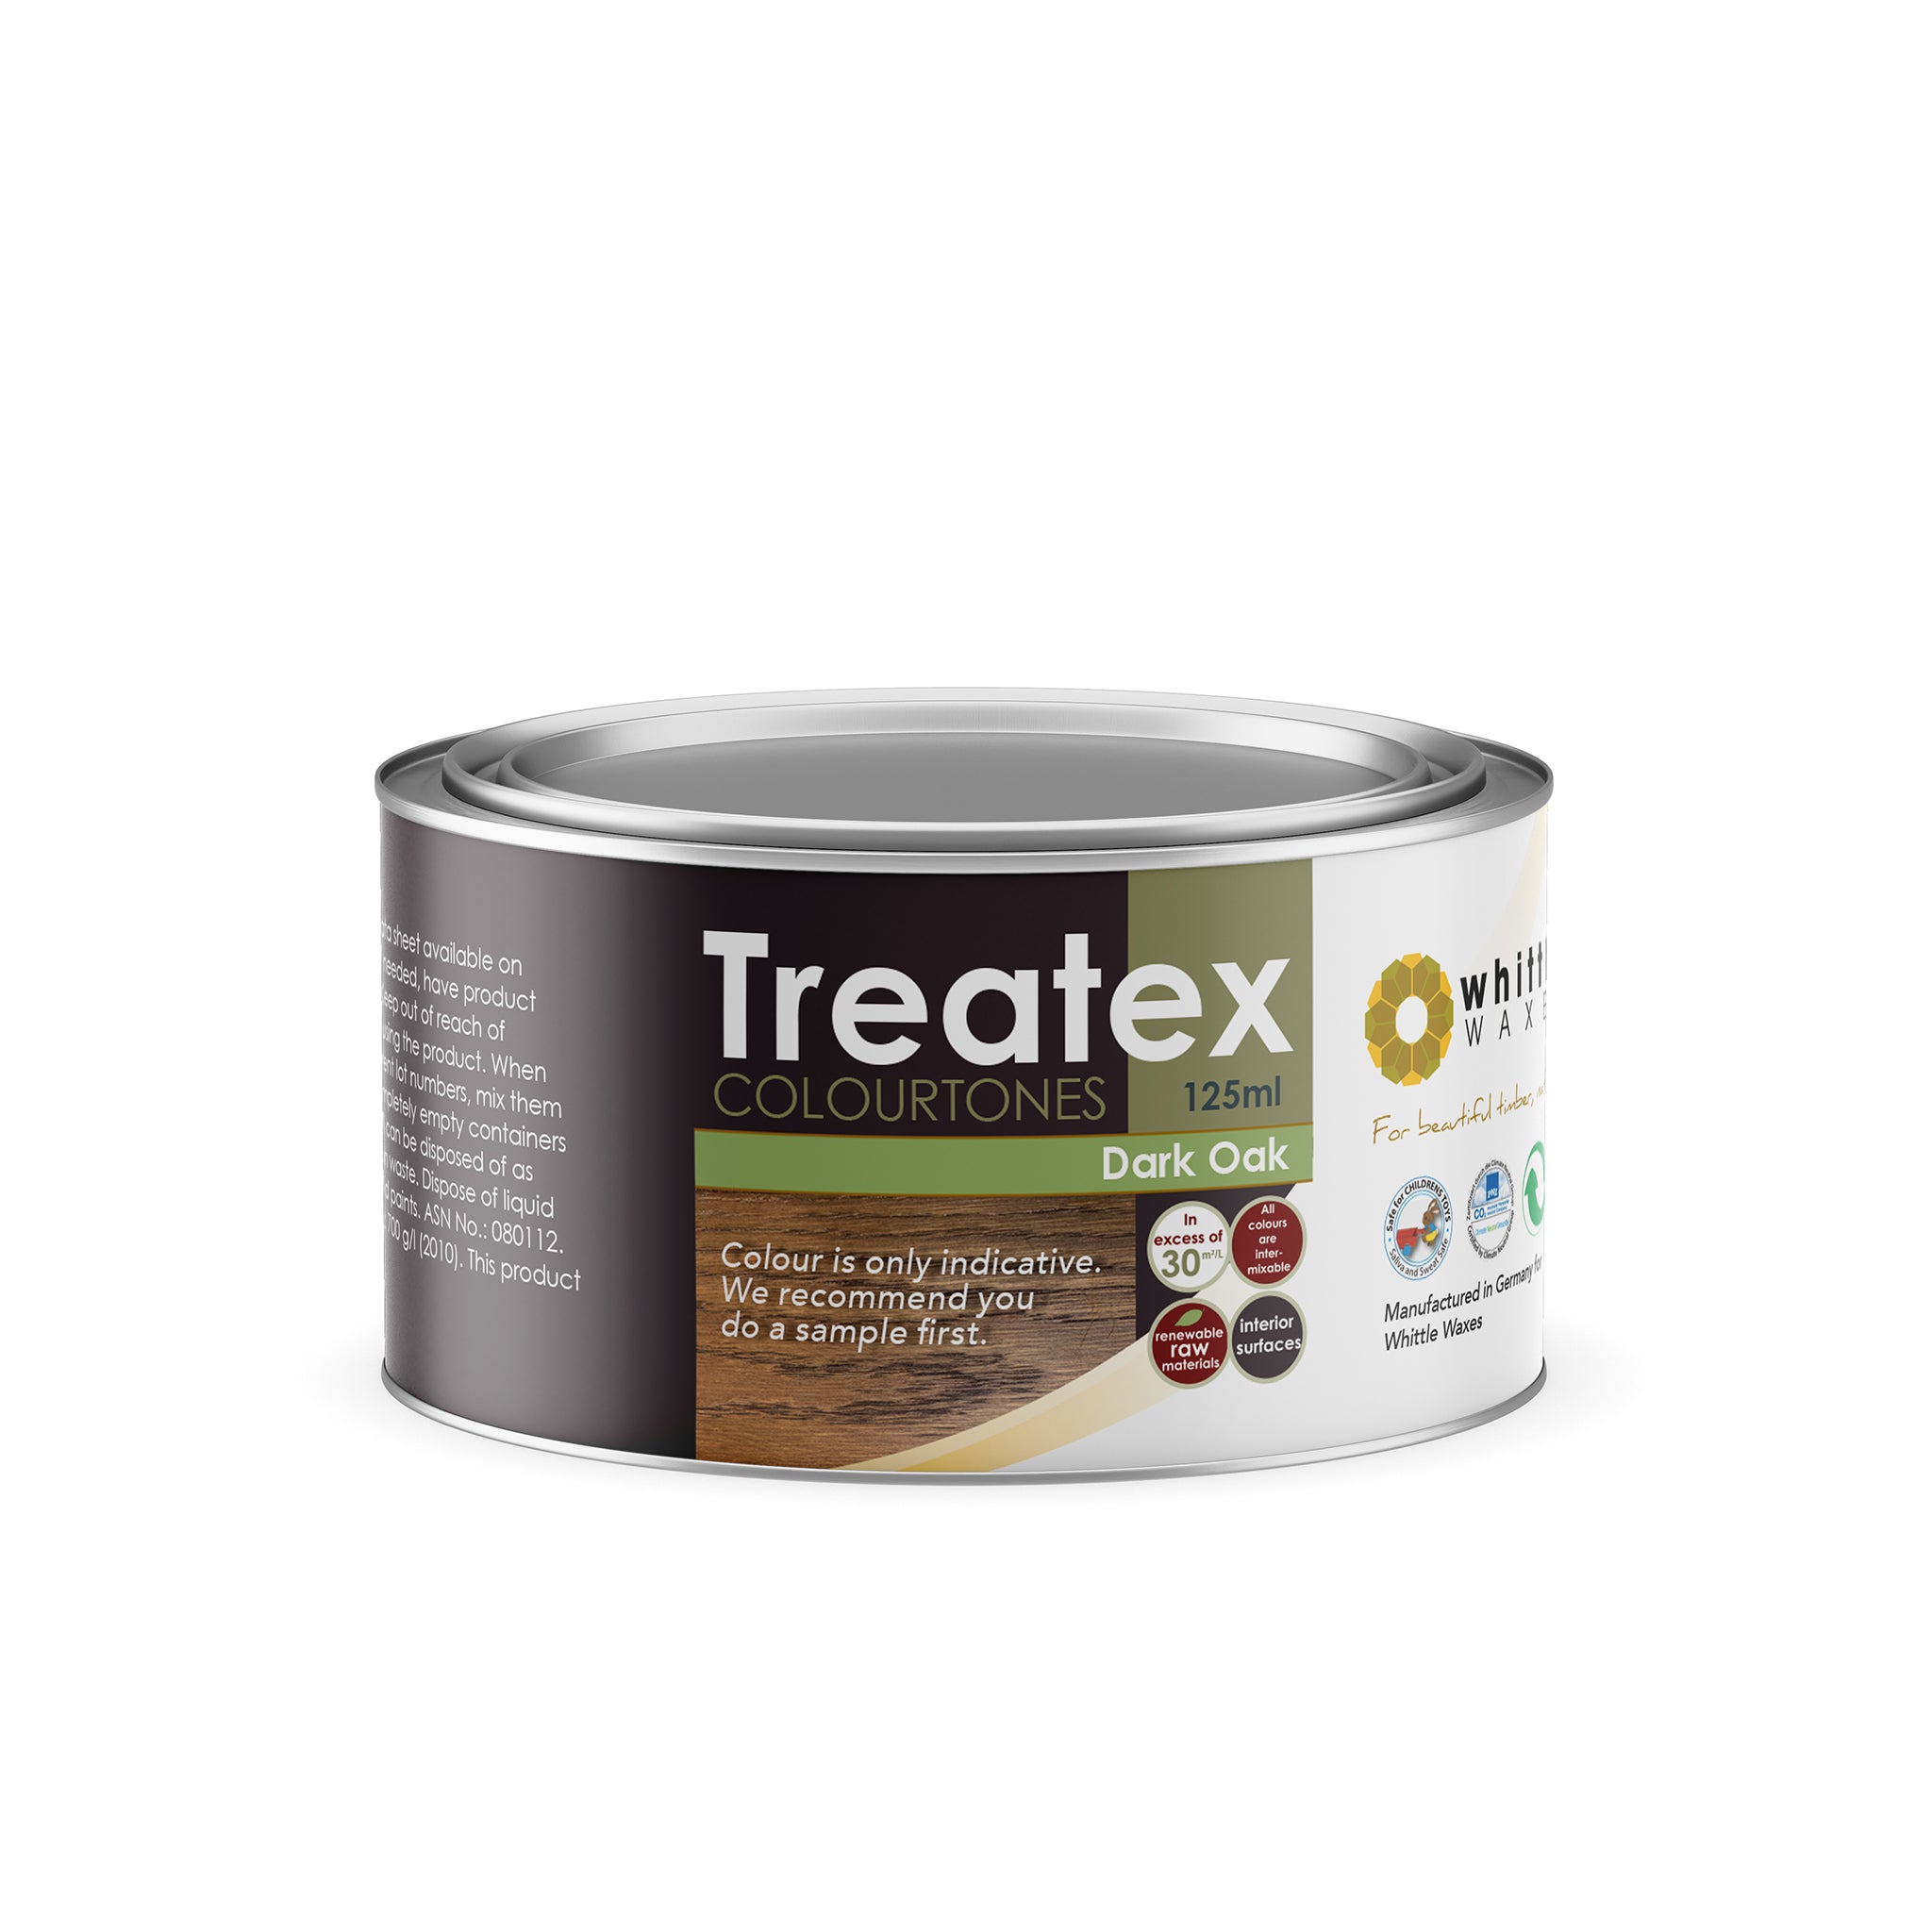 Treatex Colourtone - Dark Oak